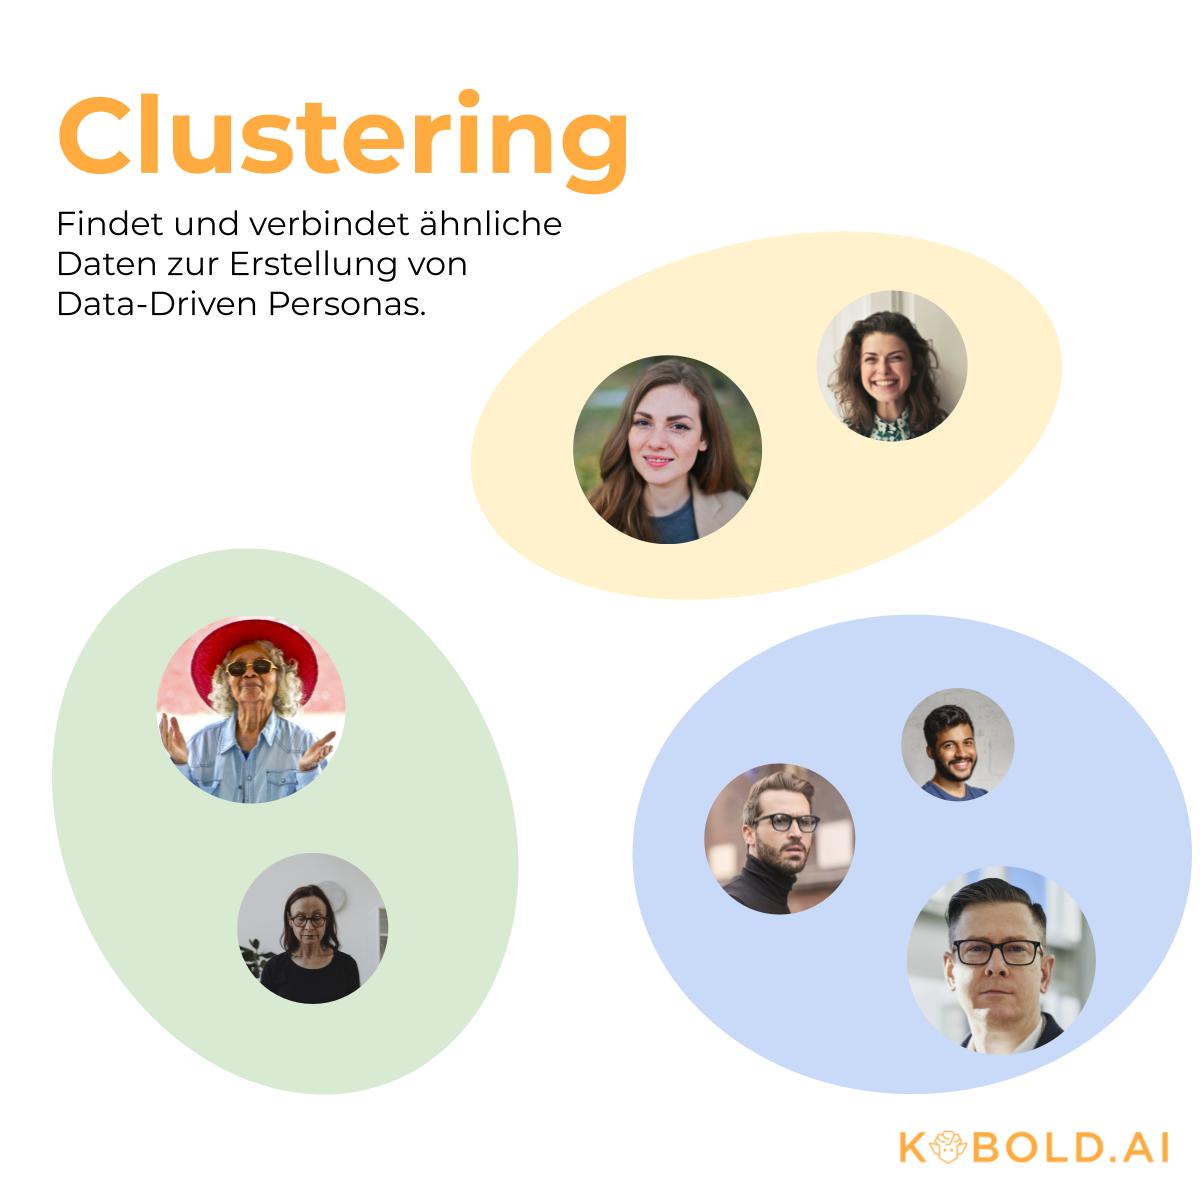 Clustering: Gruppen von ähnlichen Daten durch maschinelles Lernen